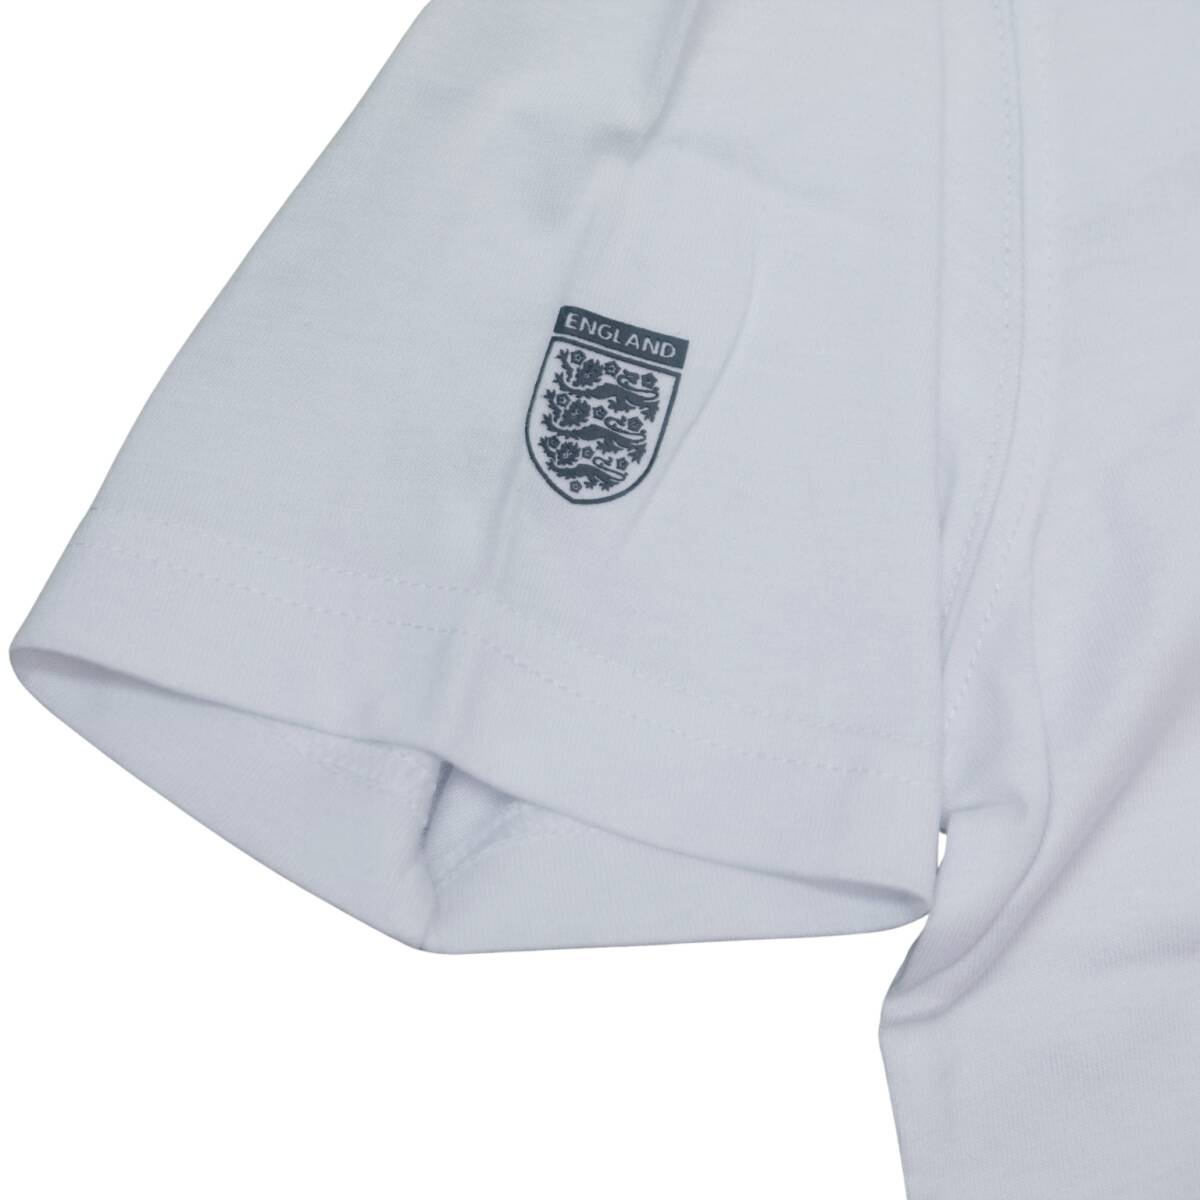 即決☆アンブロ Tシャツ XLサイズ イングランド代表 テリーブッチャー 送料無料 貴重 アンブロモデル 国内正規品_画像4